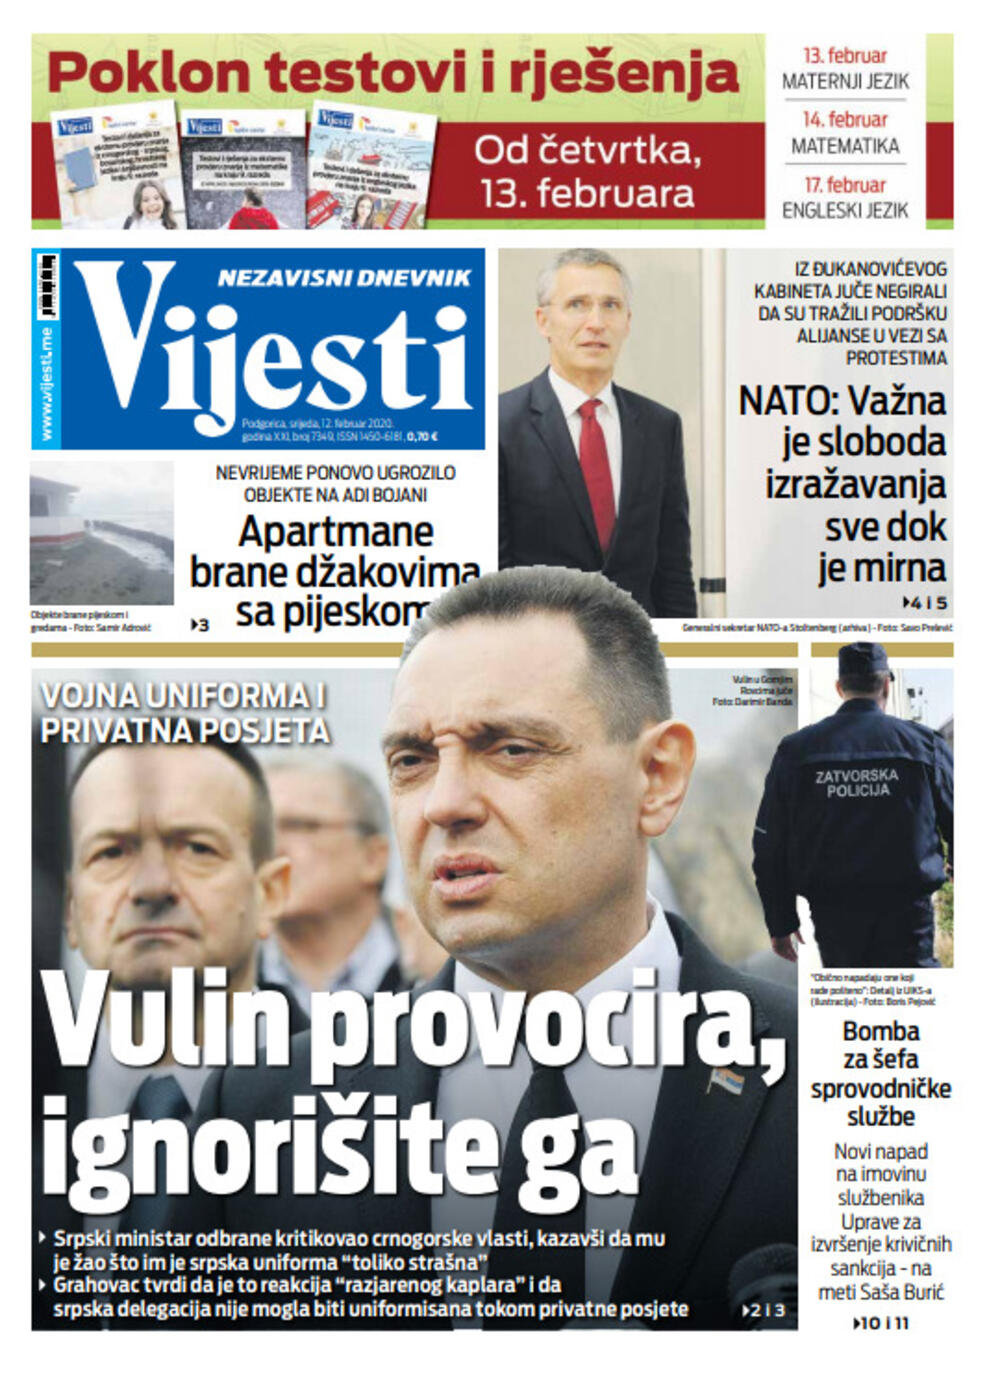 Naslovna strana "Vijesti" za 12. februar 2020. godine, Foto: "Vijesti"